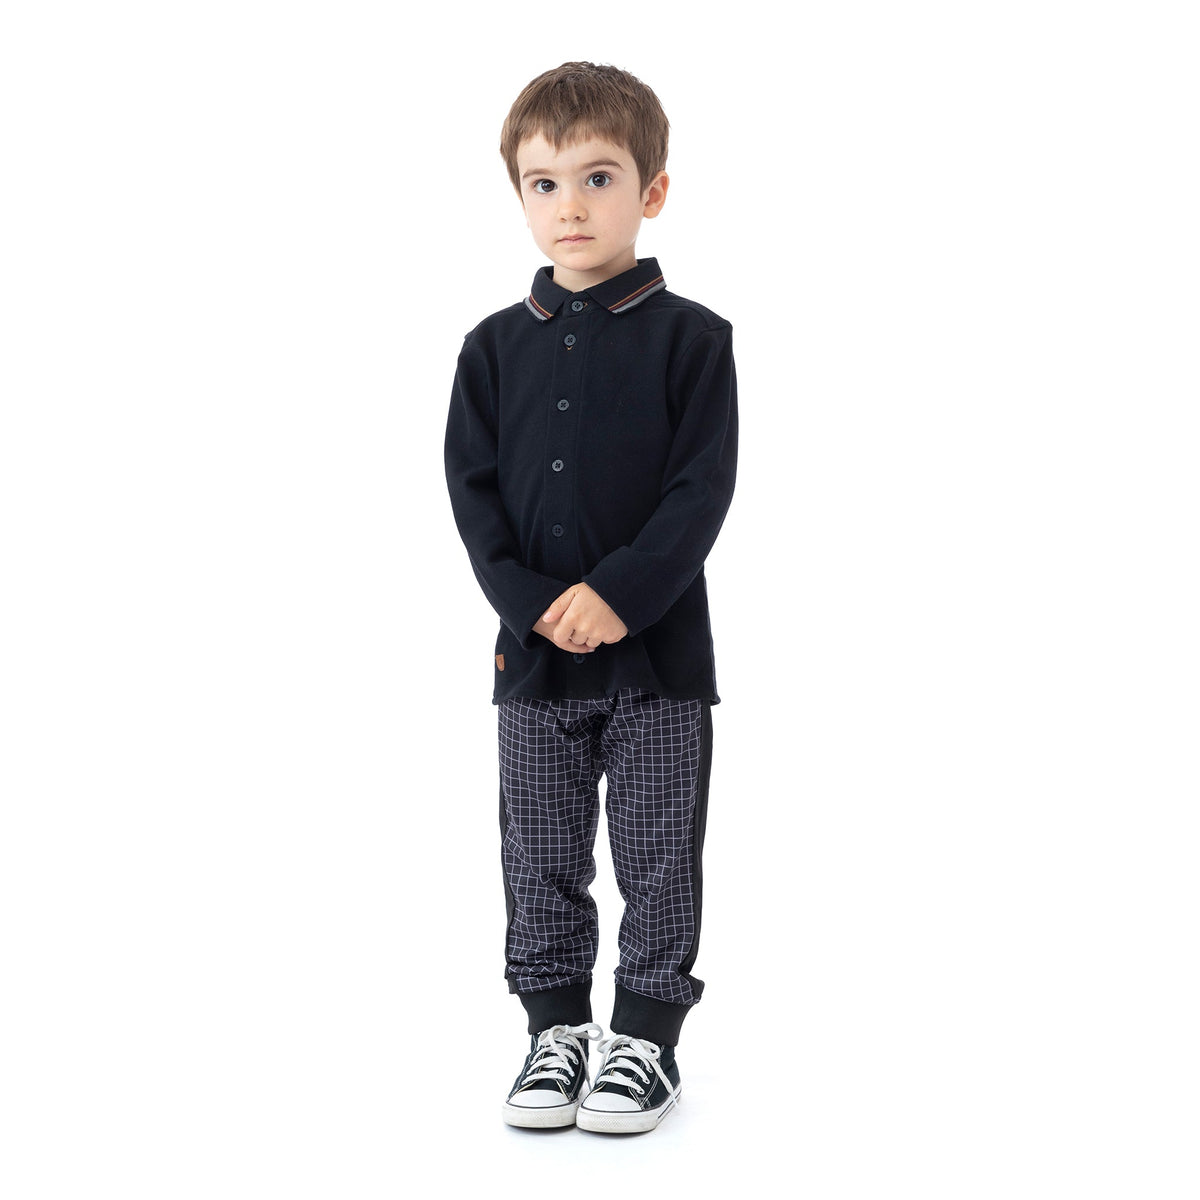 Chemise manches longues pour enfant garçon par Nanö | F2225-01 Noir | Boutique Flos, vêtements mode pour bébés et enfants